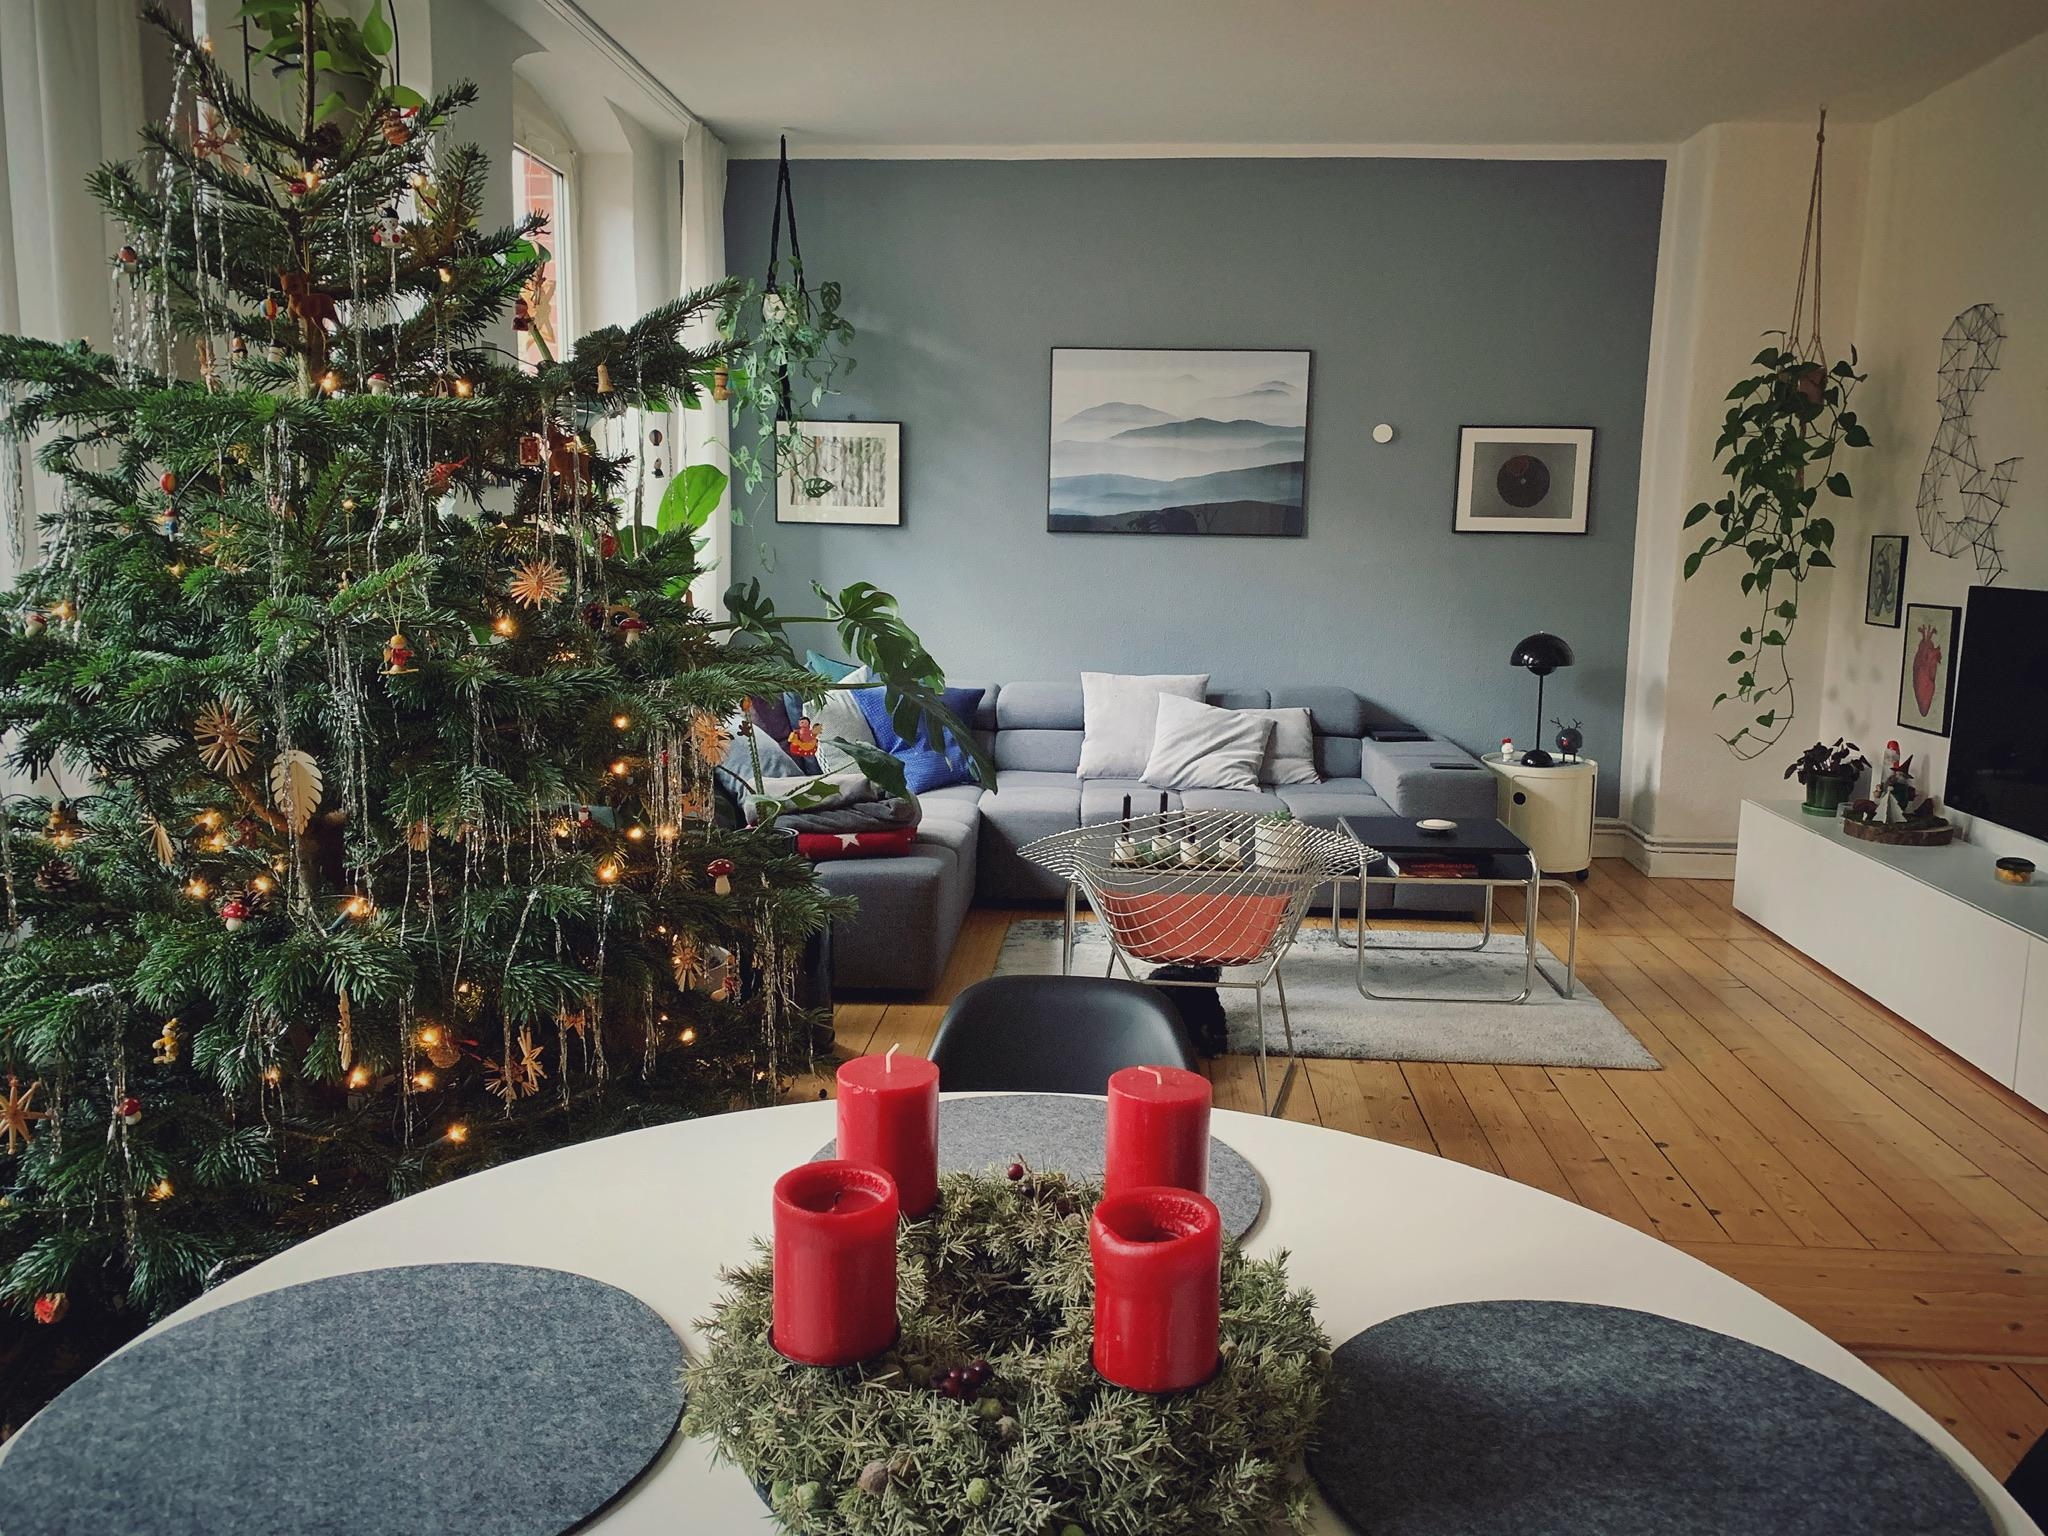 Es weihnachtet sehr sehr sehr.... #couchstyle #weihnachten #homesweethome